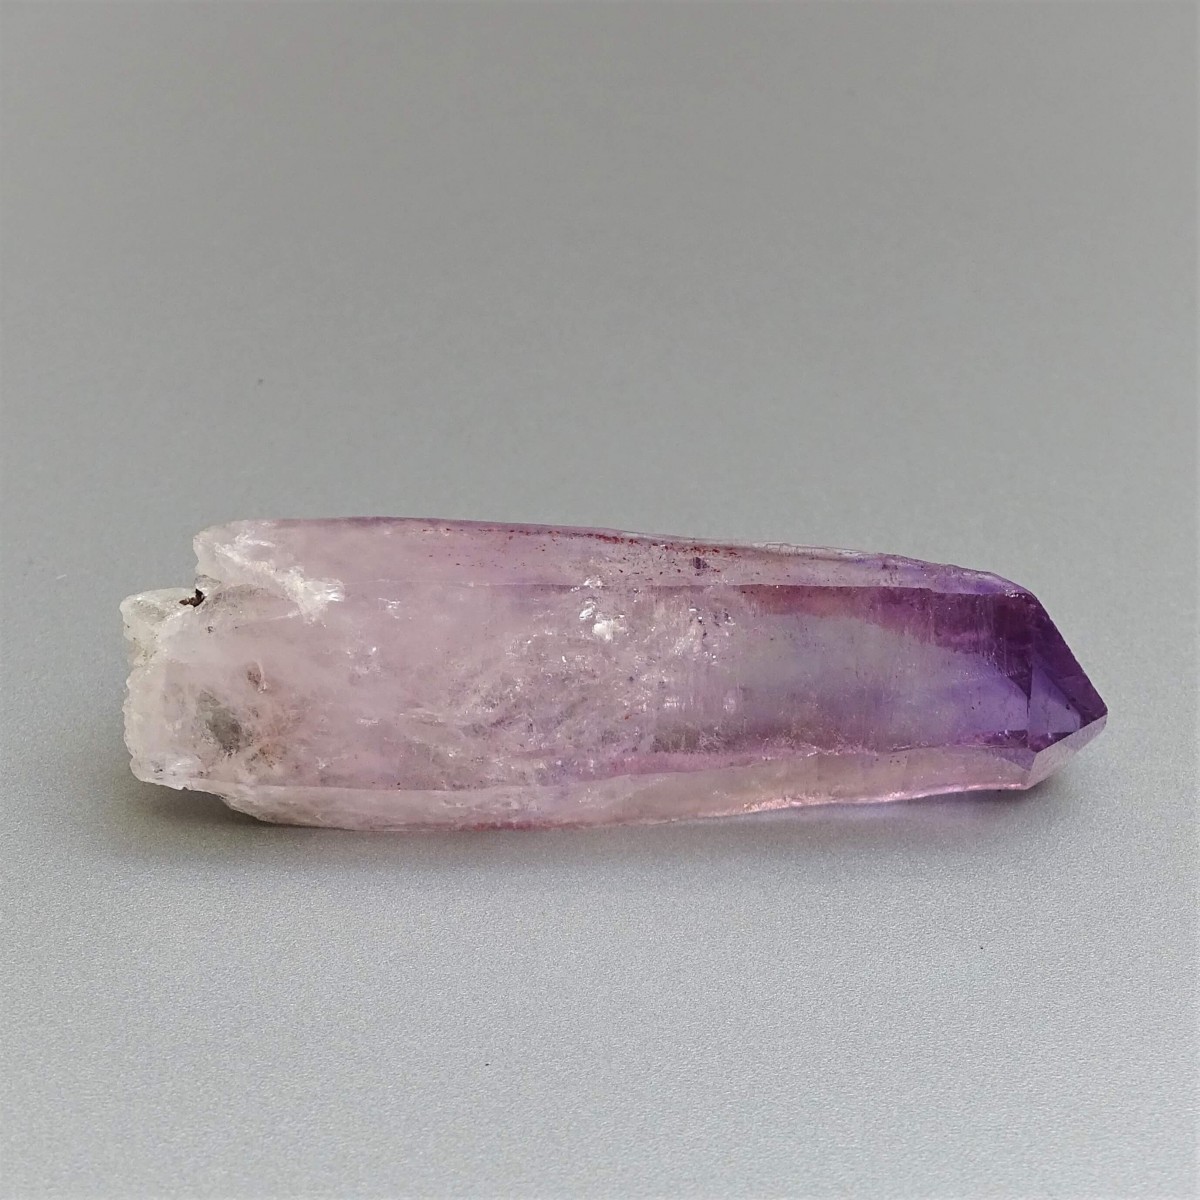 Amethyst natürliche Kristalle 33,5g, Mexiko